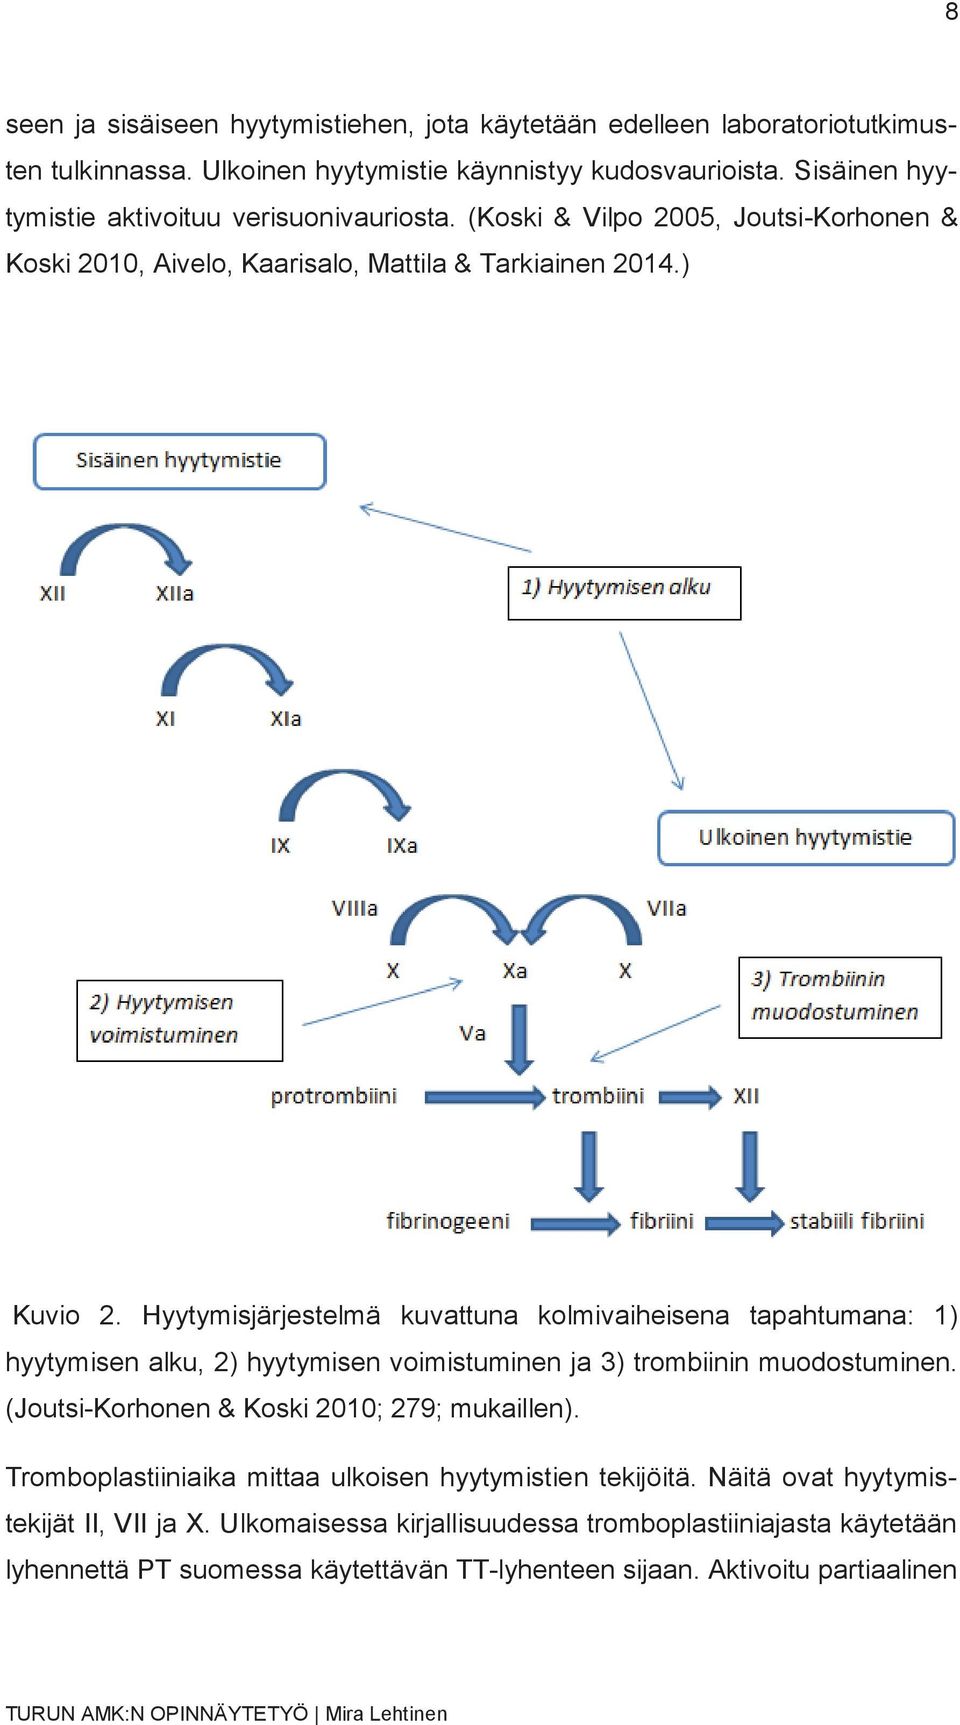 Hyytymisjärjestelmä kuvattuna kolmivaiheisena tapahtumana: 1) hyytymisen alku, 2) hyytymisen voimistuminen ja 3) trombiinin muodostuminen.